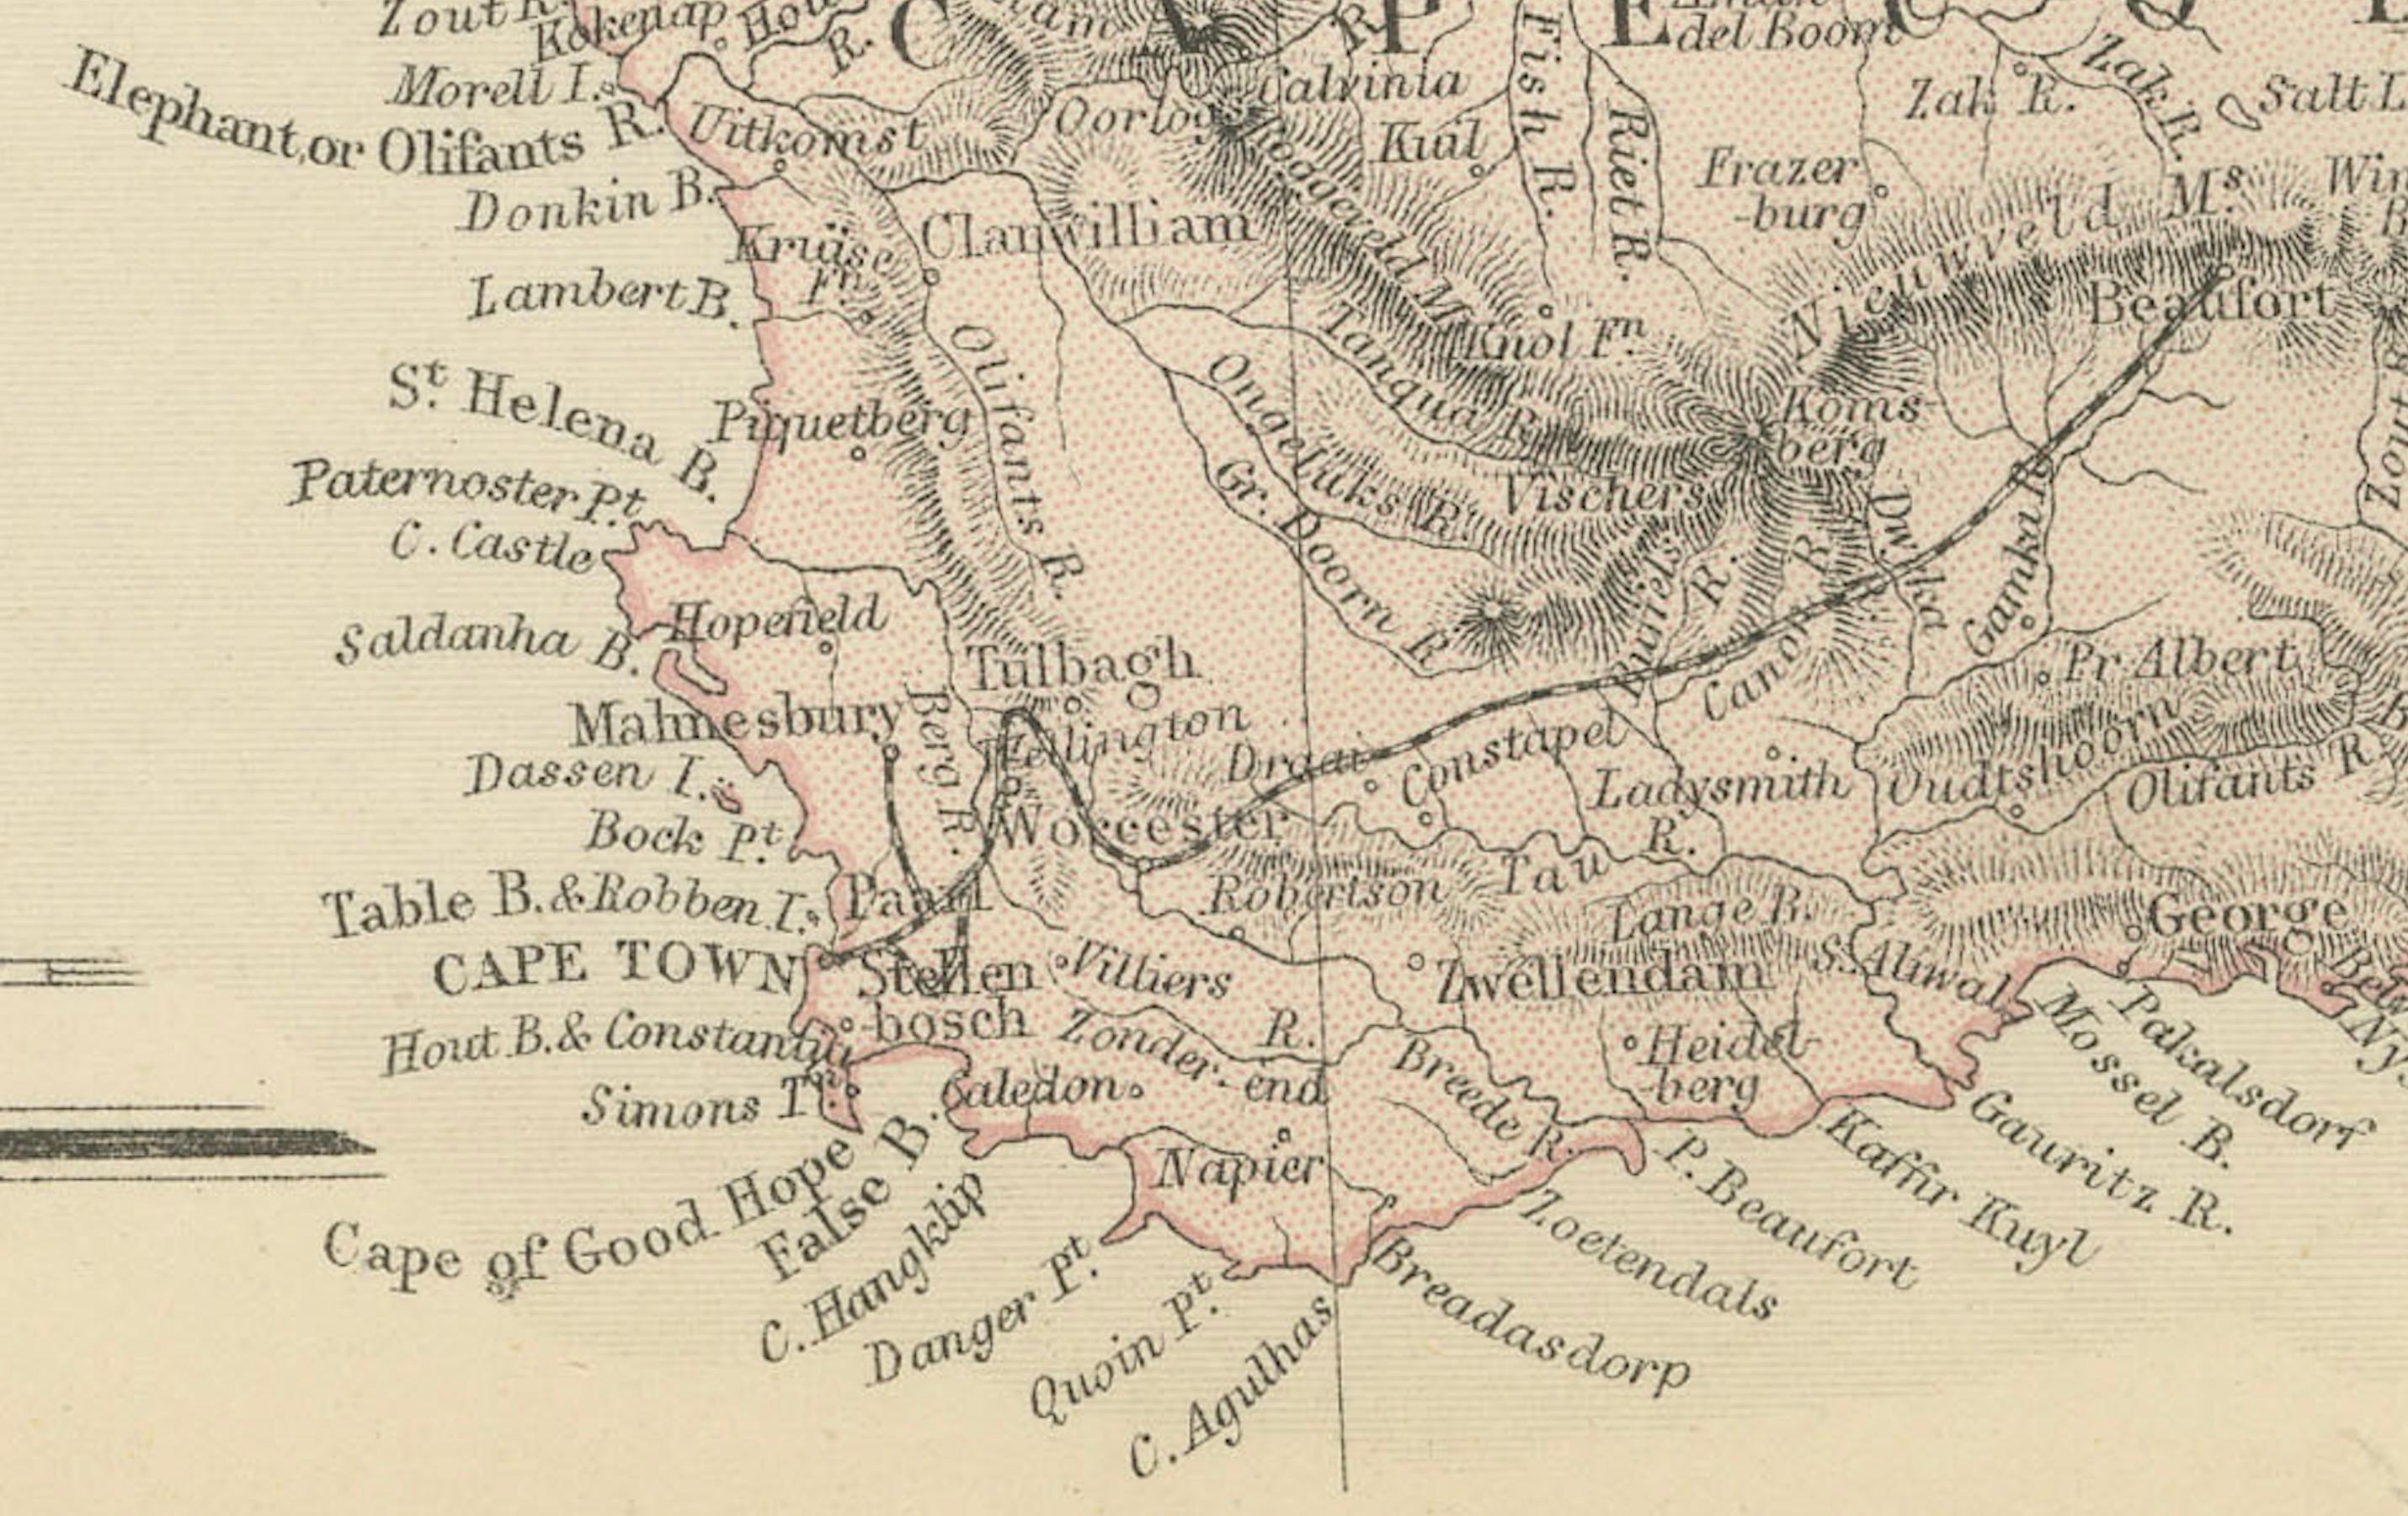 Die Karte von Südafrika stammt aus dem Blackie & Son Atlas, der 1882 veröffentlicht wurde. Diese historische Karte ist aus mehreren Gründen sehr interessant:

1. **Geschichtlicher Zeitraum**: Diese Karte entstand in einer bedeutenden Periode der